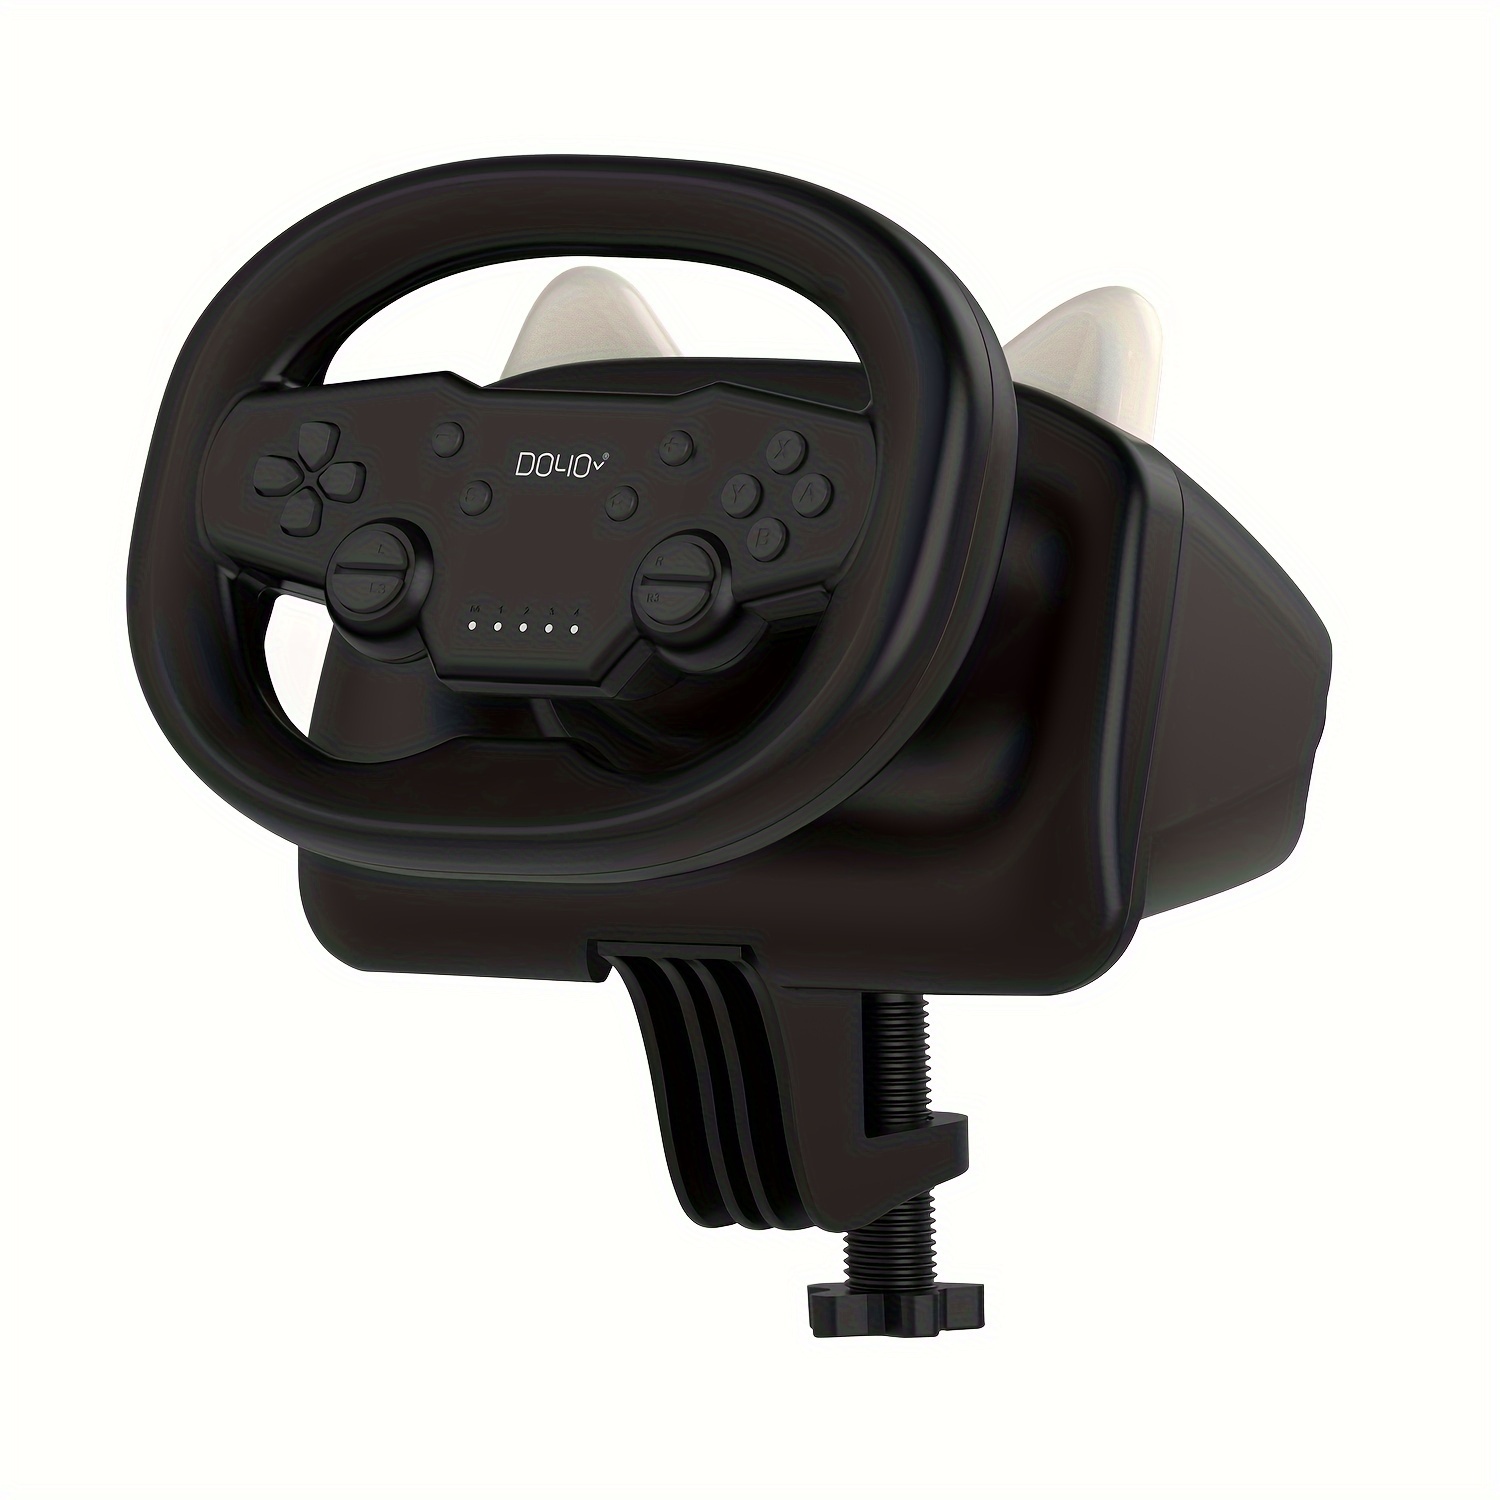 Volante De Carreras De Juegos Racing Wheel for Xbox One PS4 PS3